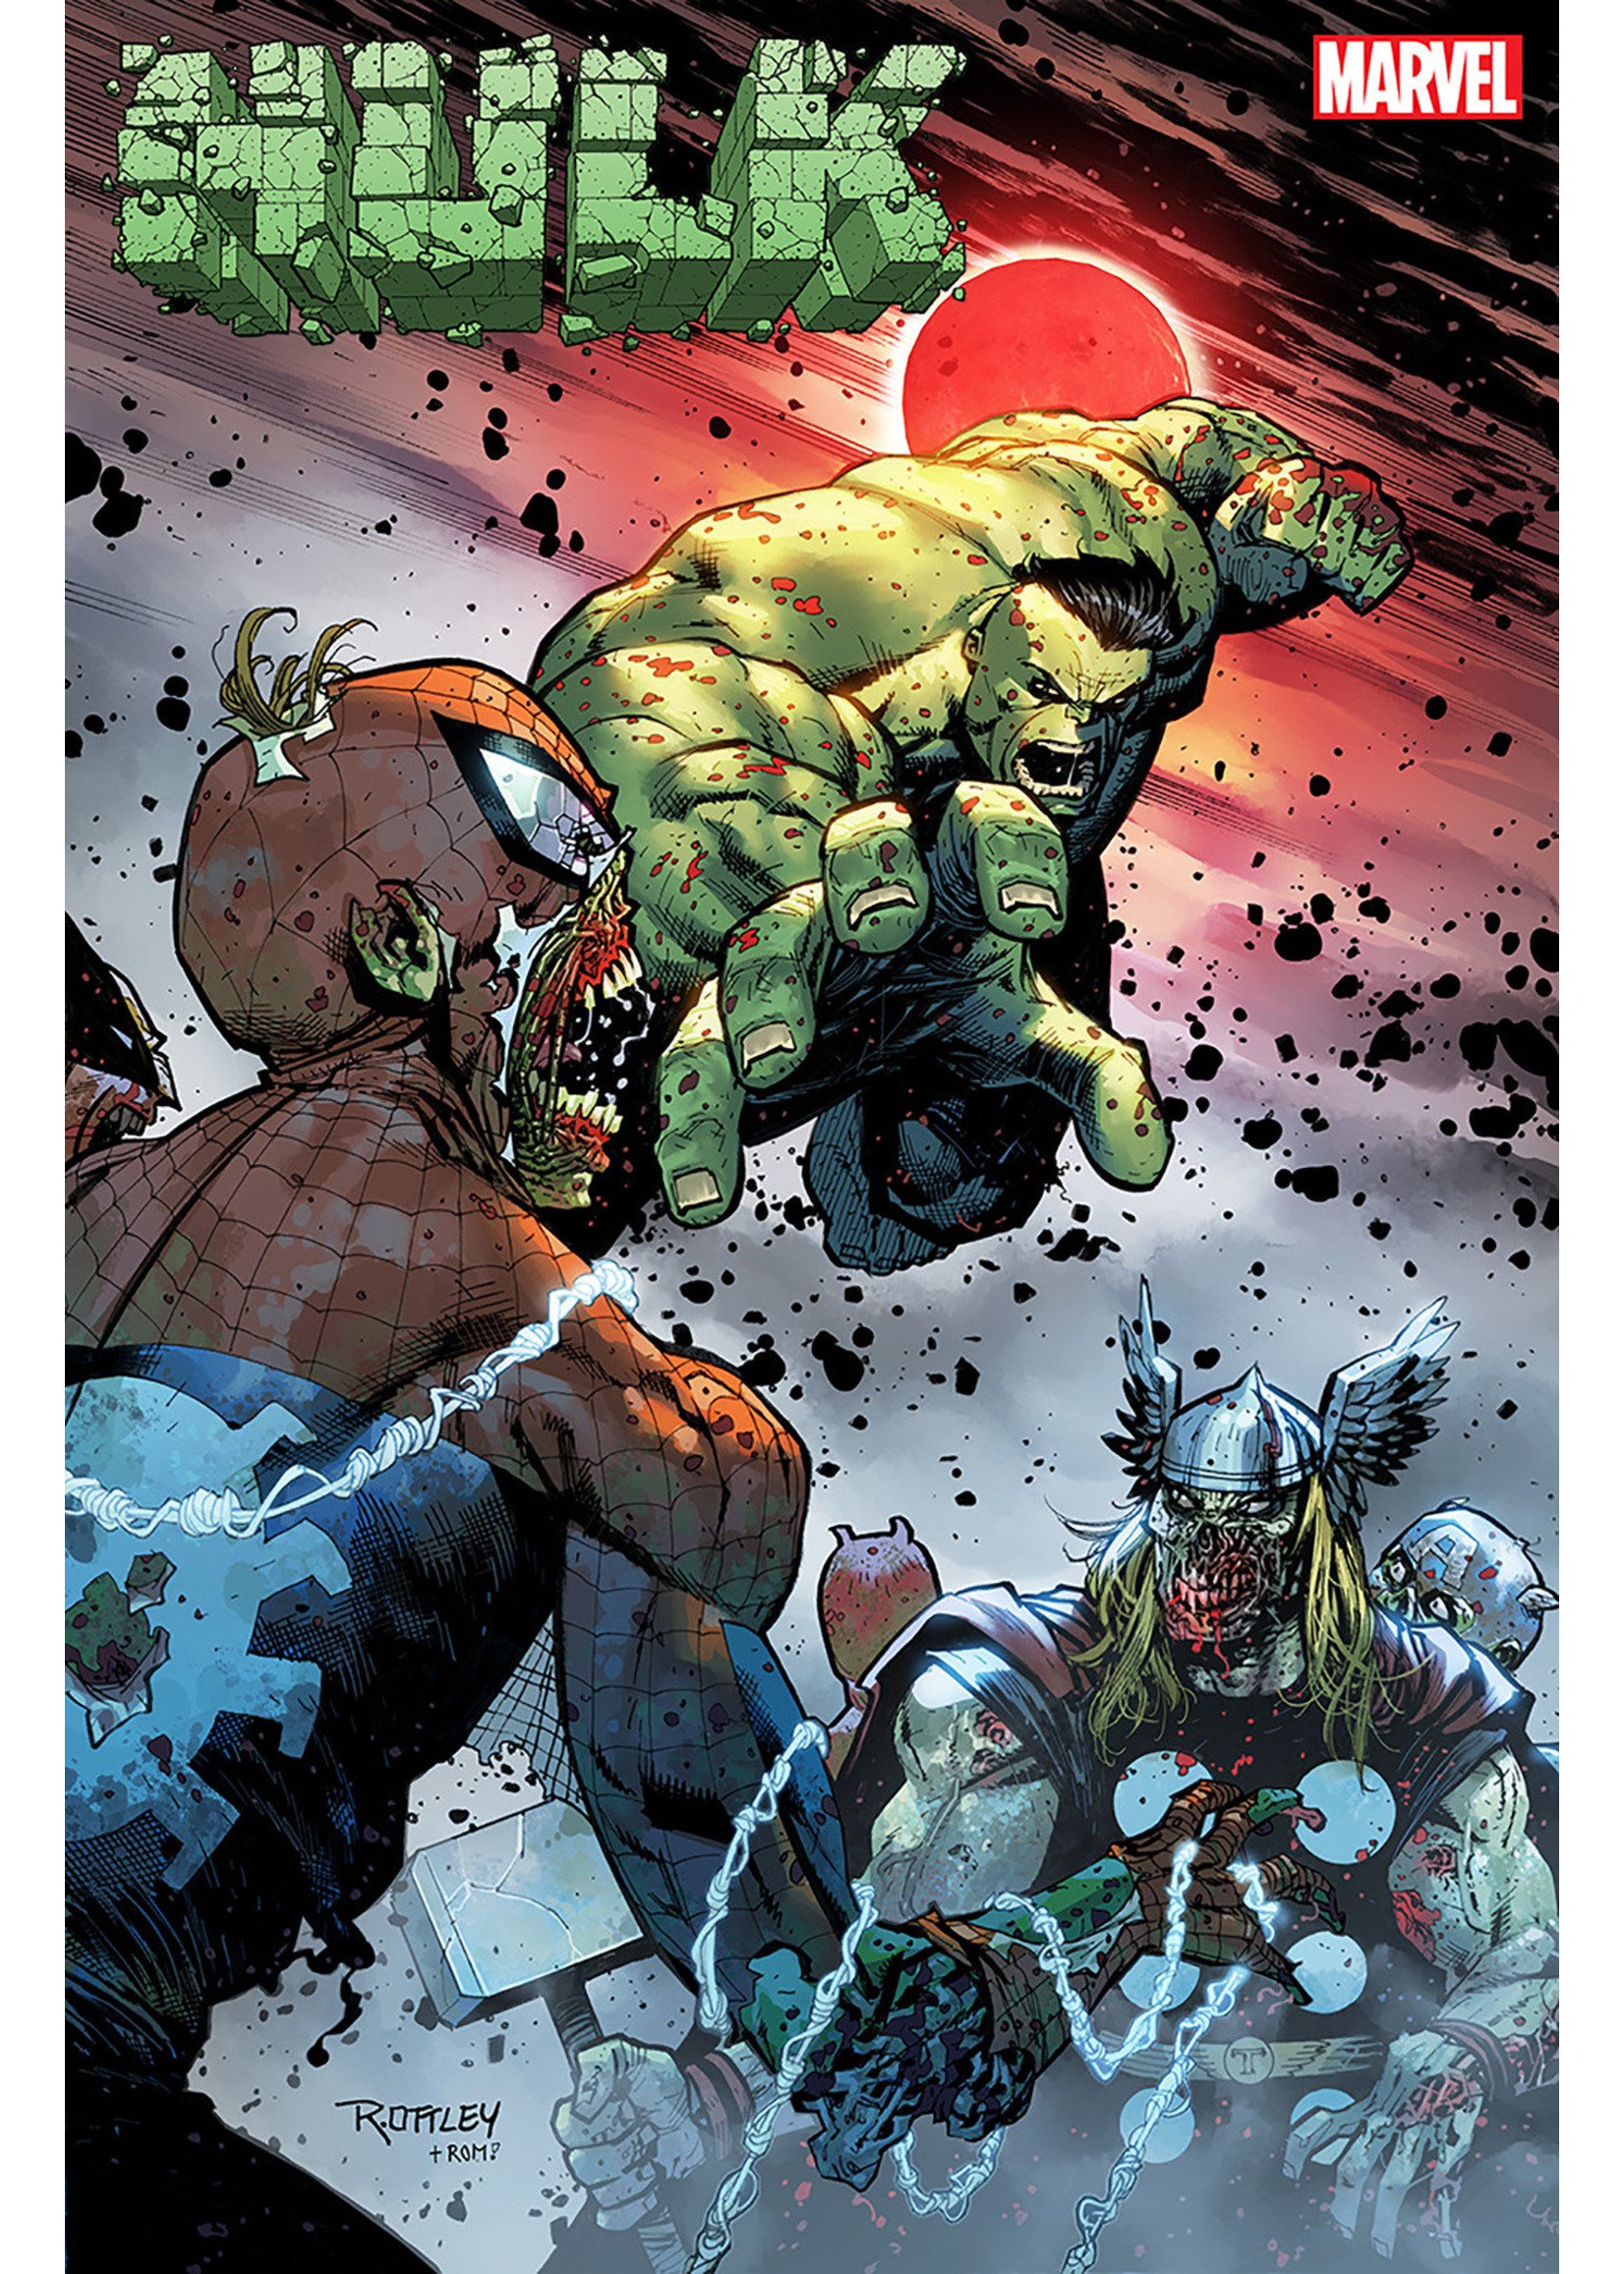 Hulk #04